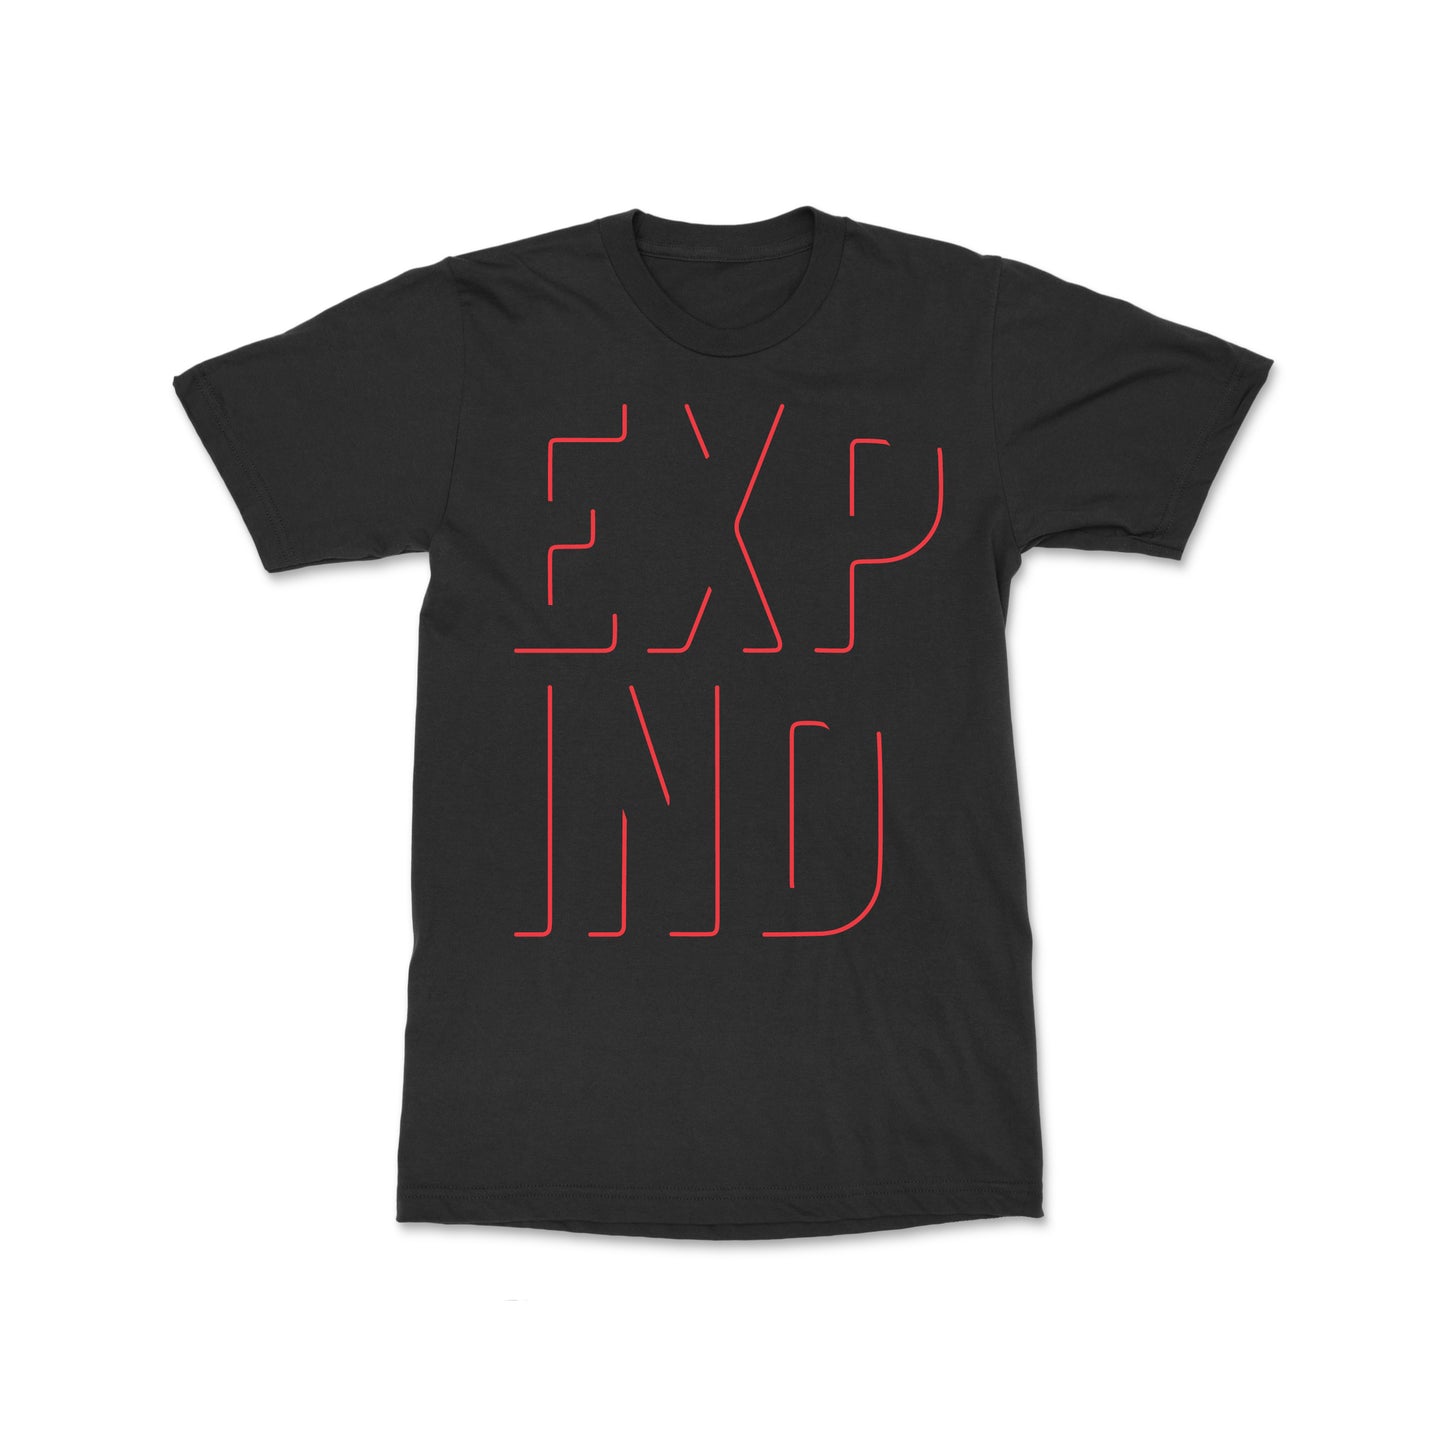 EXP IND Tee - Black